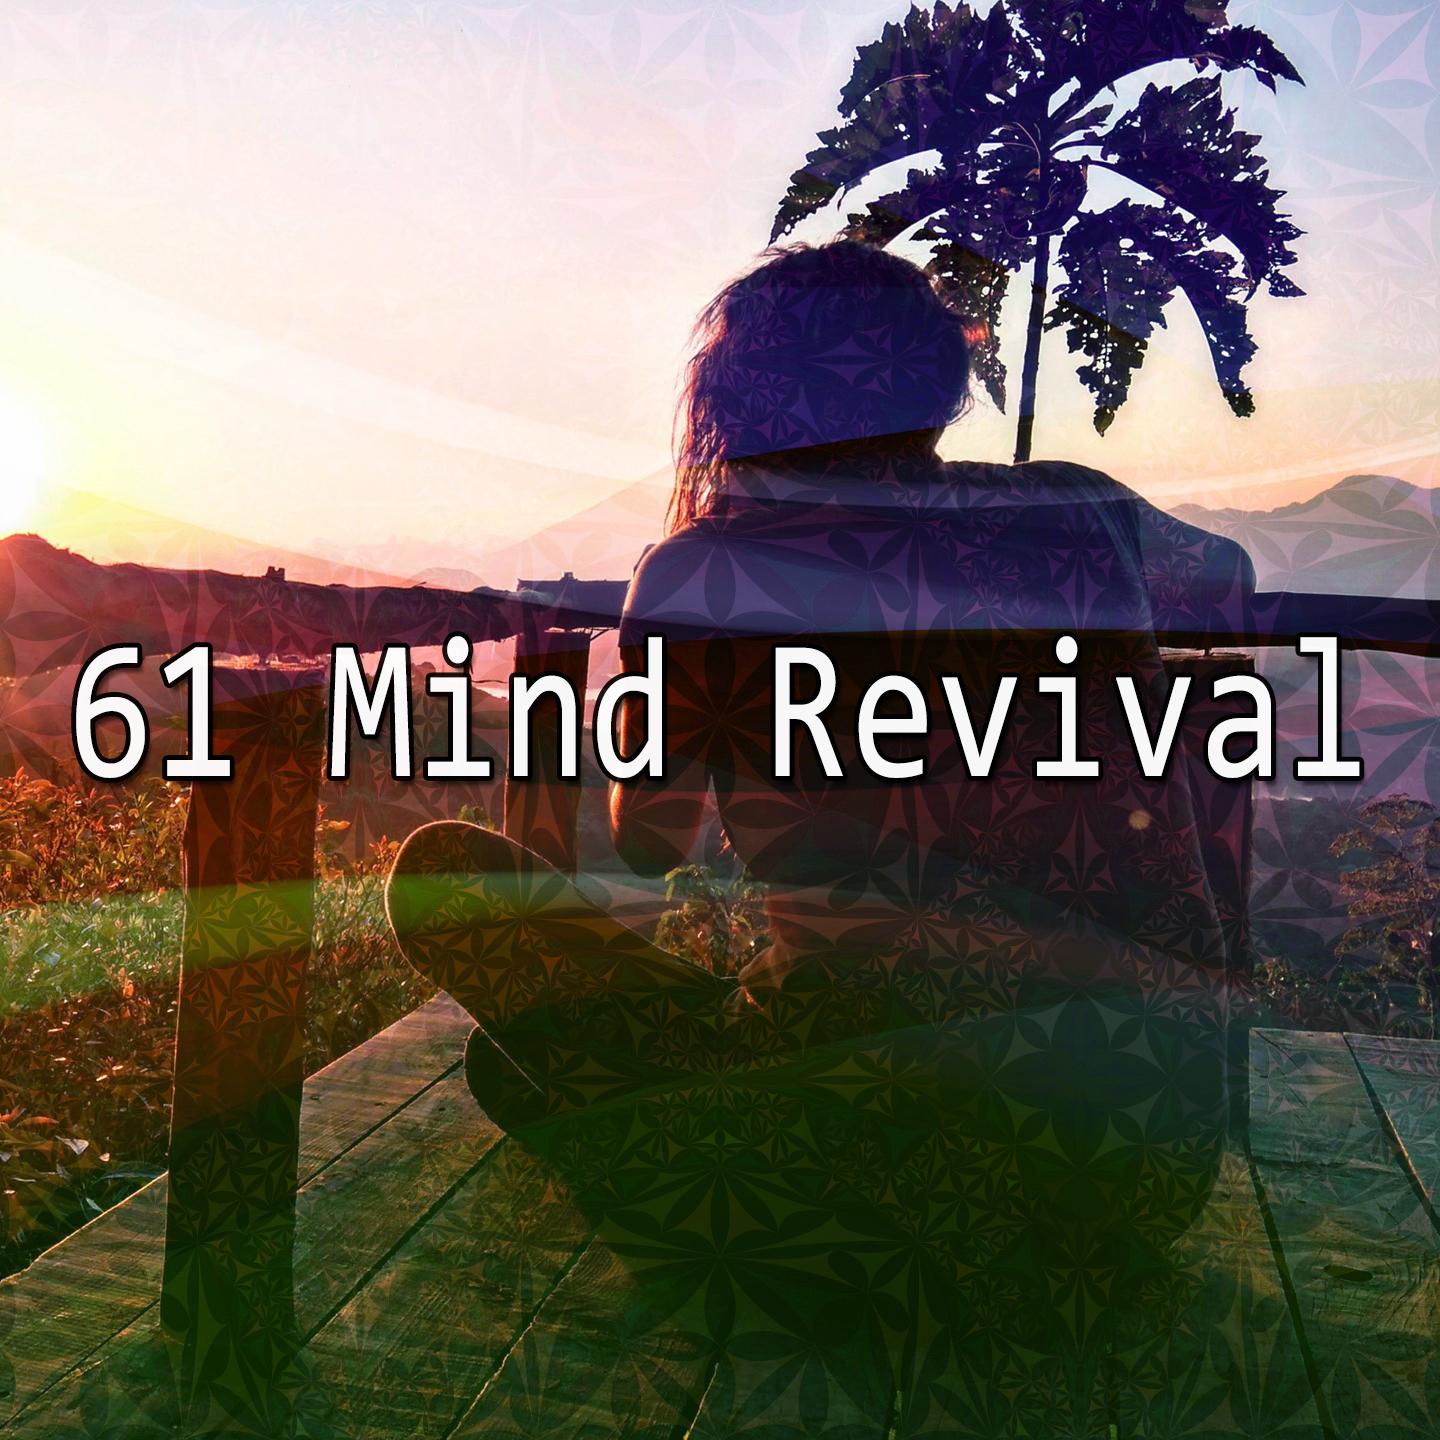 61 Mind Revival